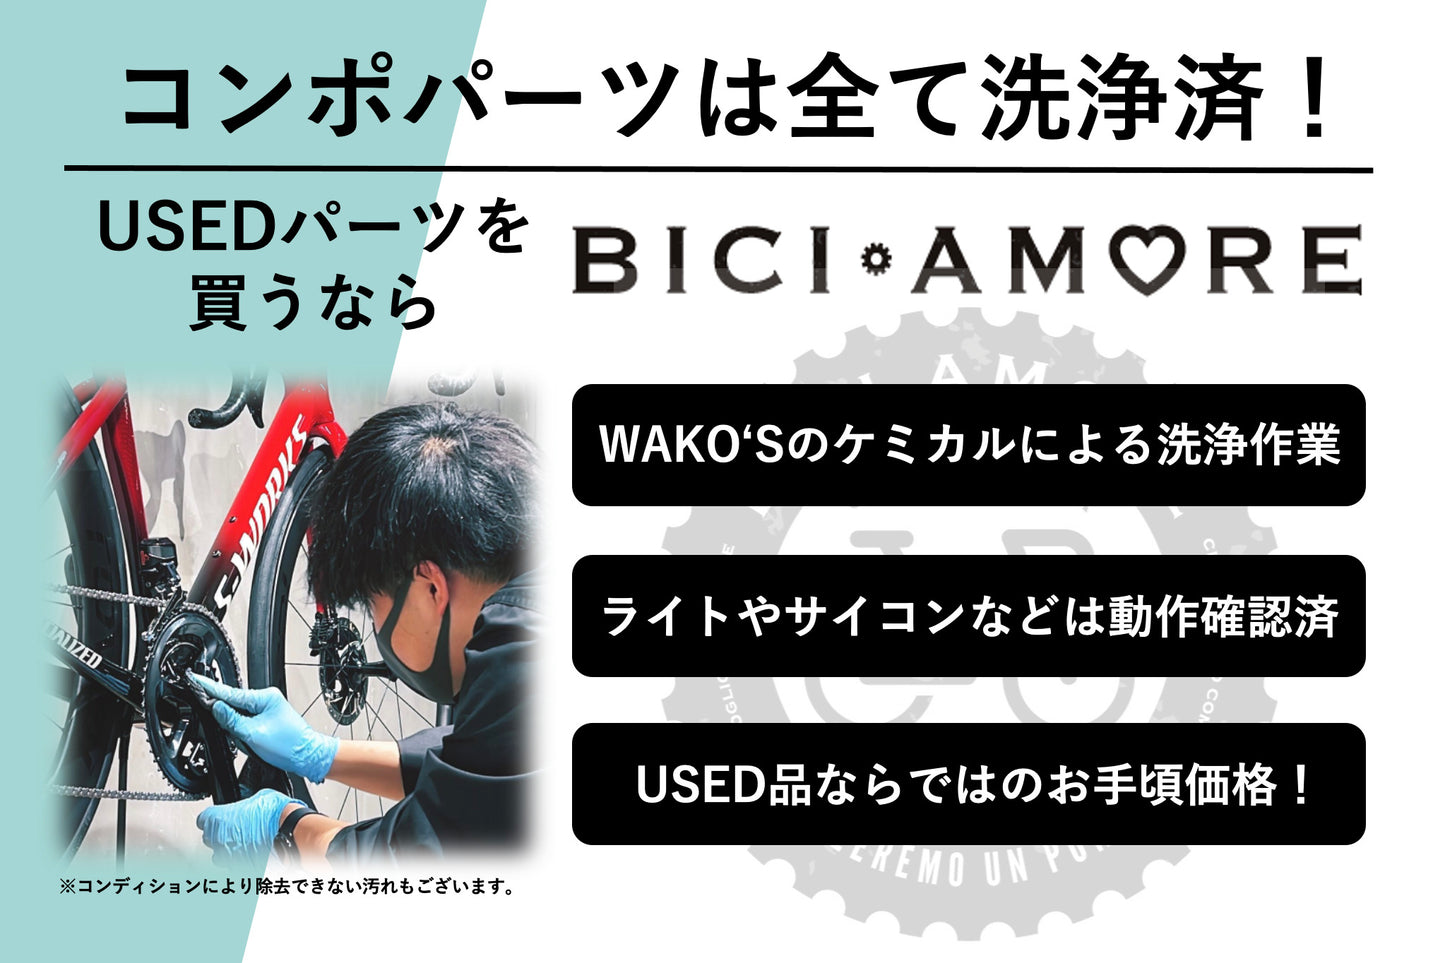 GZ609 シマノ SHIMANO デュラエース DURA-ACE スレッドステム 80mm Φ26.0 専用工具付属